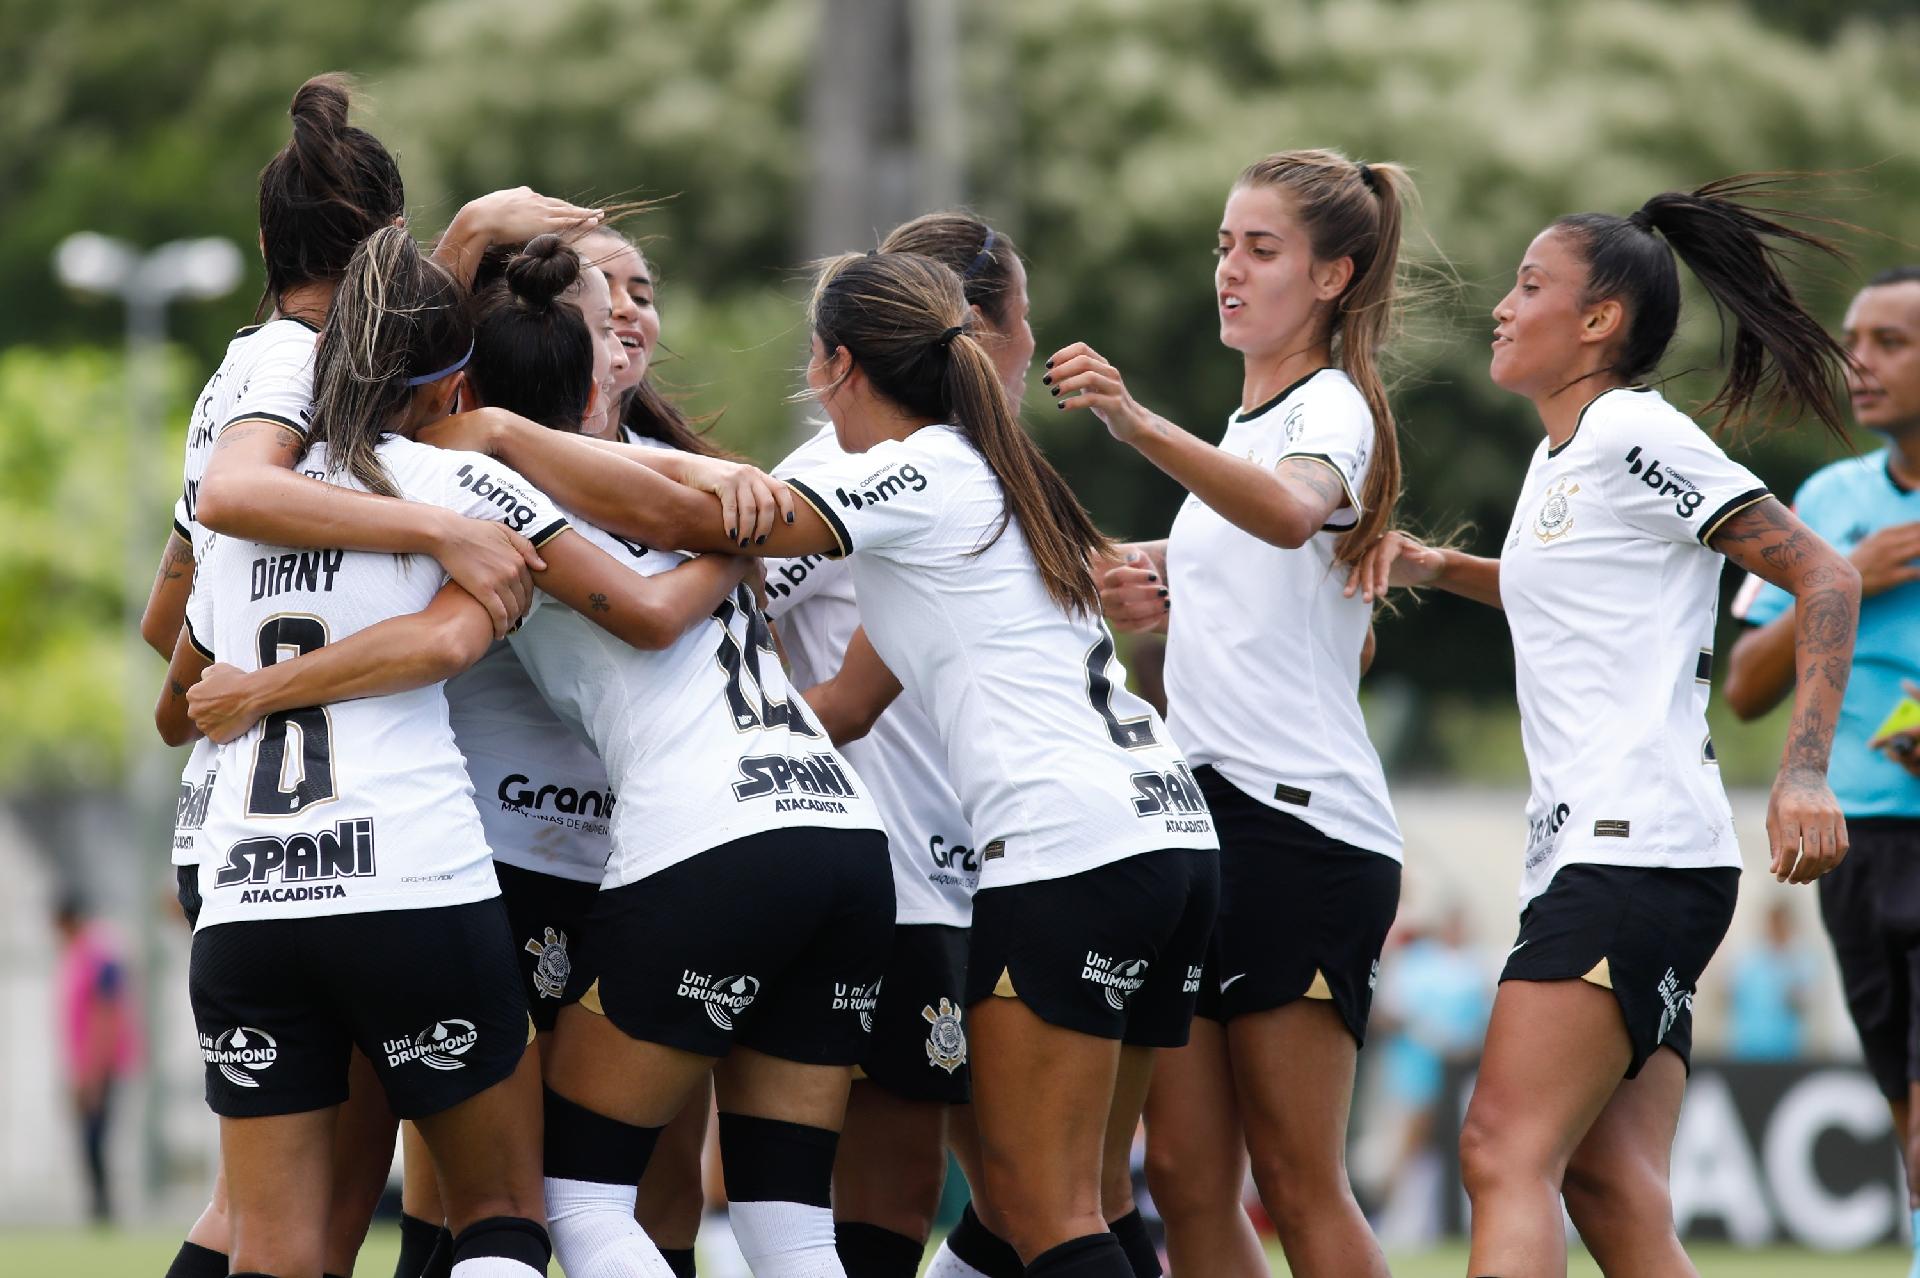 Edição dos Campeões: Ceará Campeão Brasileiro Feminino Série A2 2022